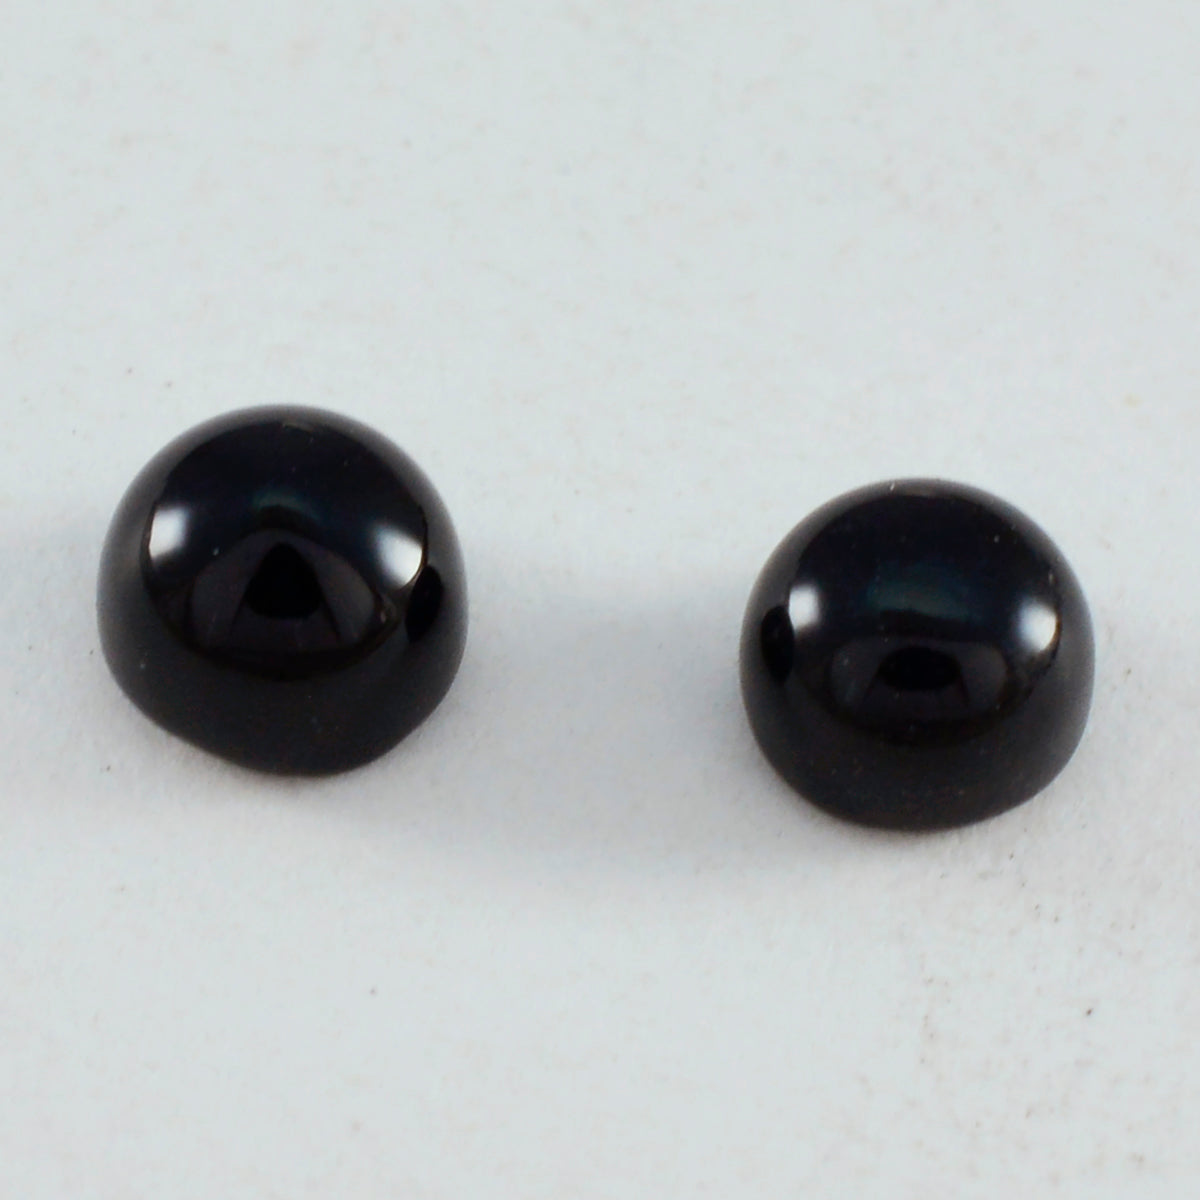 Riyogems 1 pieza cabujón de ónix negro 8x8 mm forma redonda gemas de buena calidad